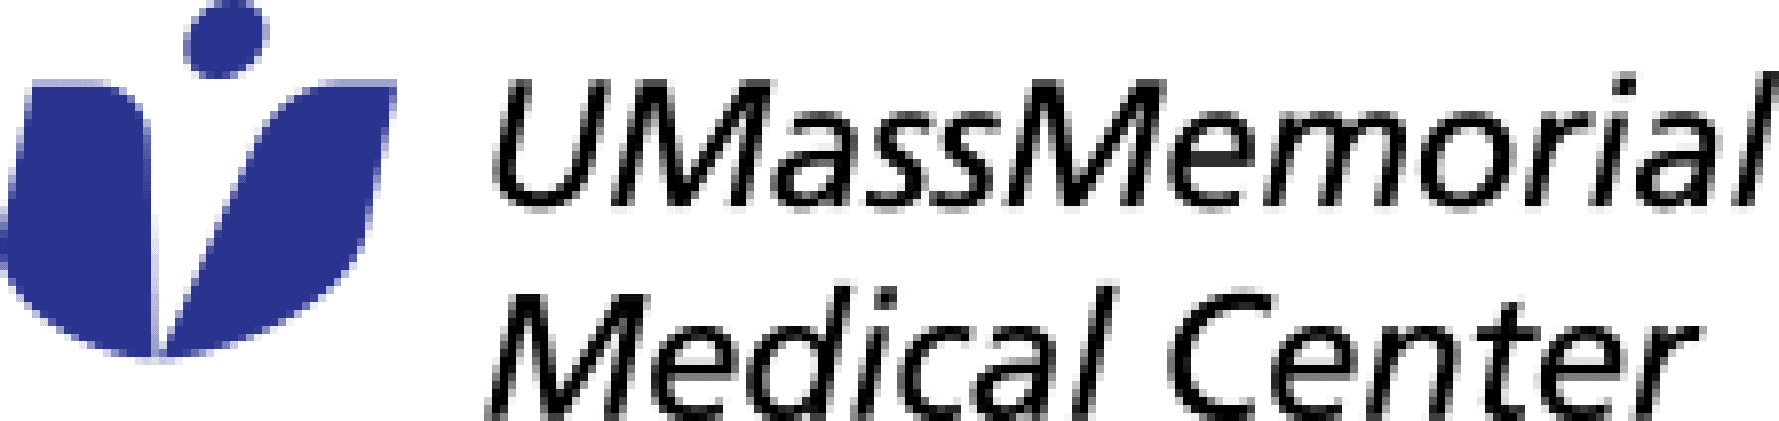 Custom healthcare website design - UMass